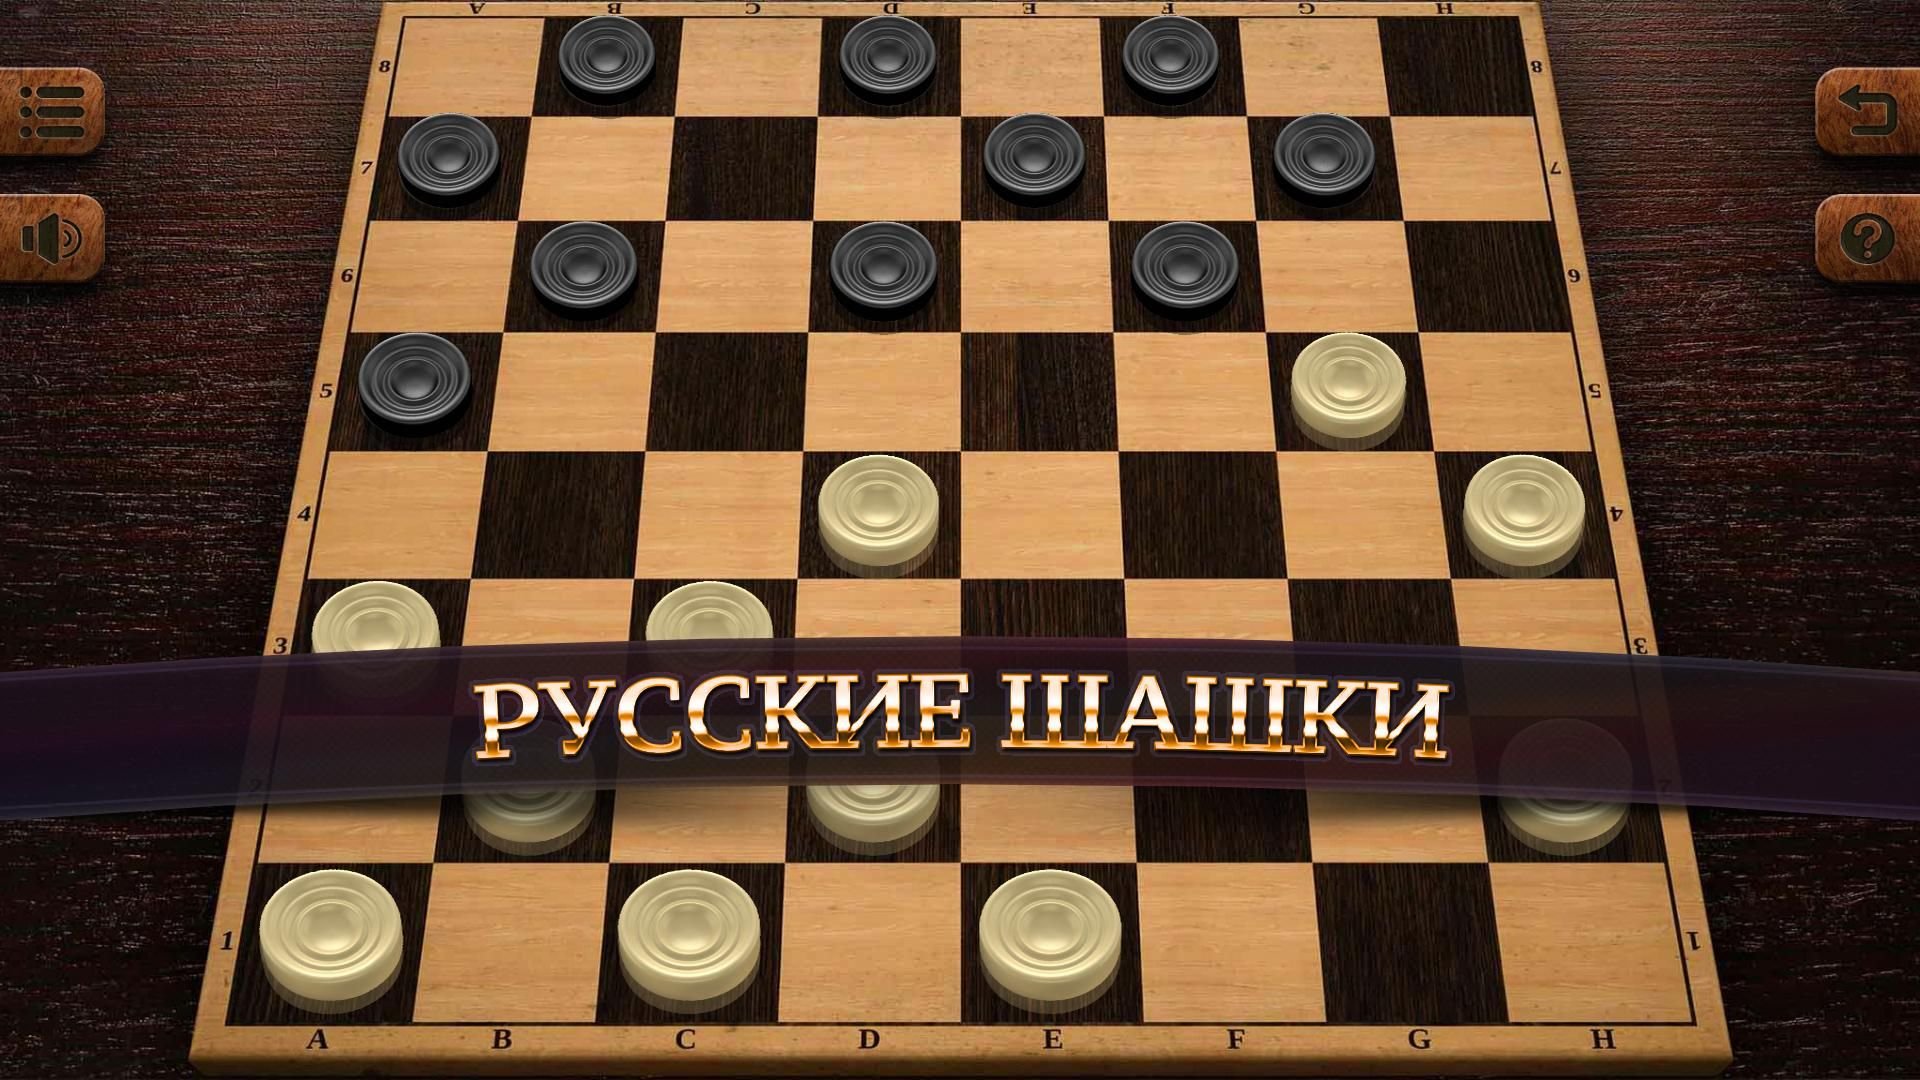 Игра в шашки сложно. Русские шашки 8.1.50. Чекерс шашки. Русские шашки 3.11.